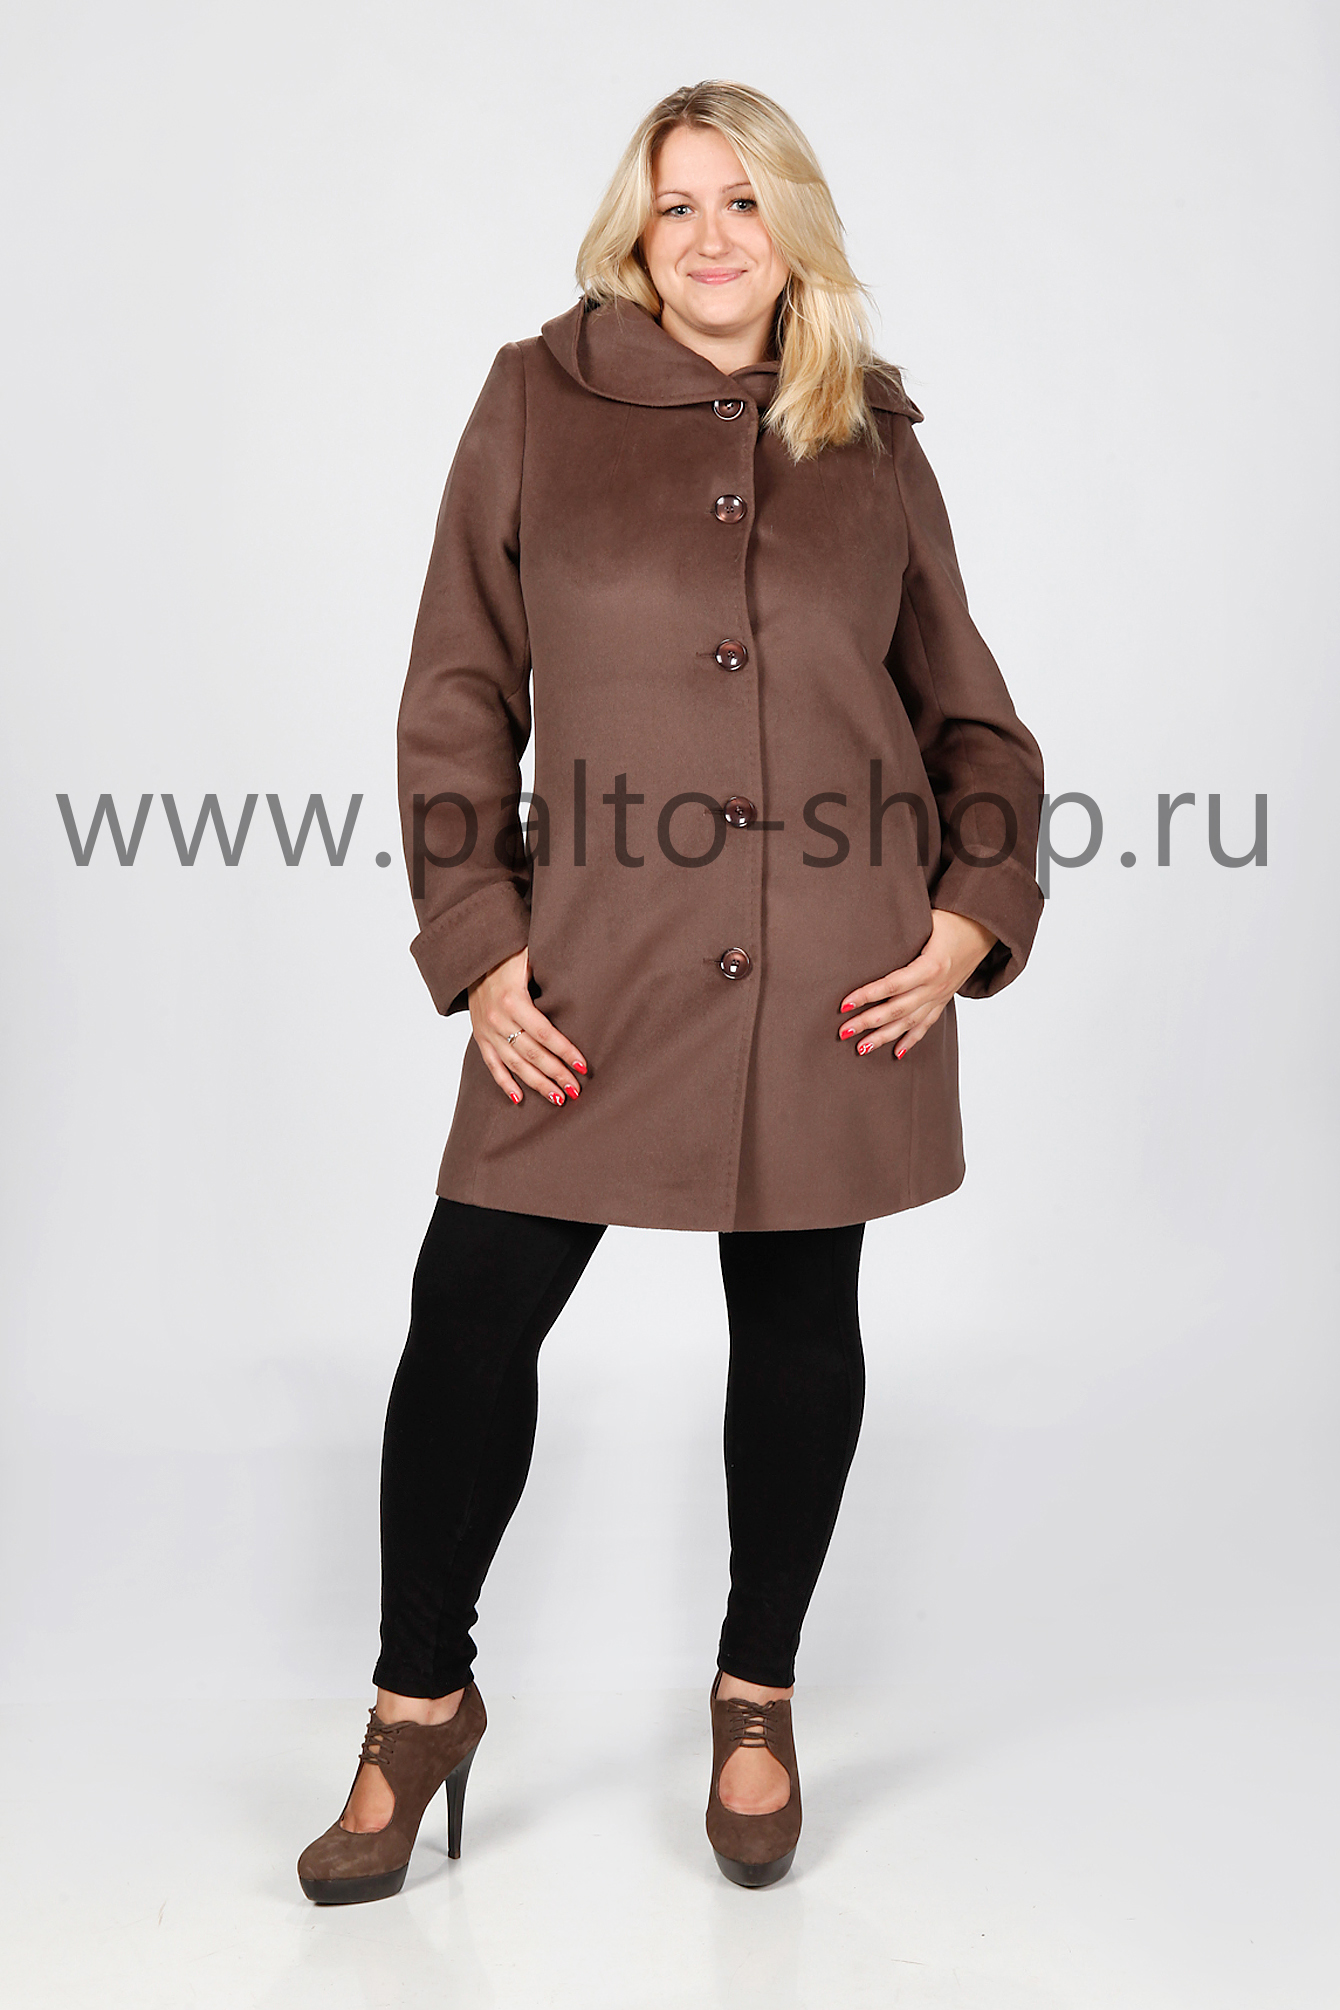 Пальто с капюшоном Николь, цвет Коричневый, тм Valery 2000